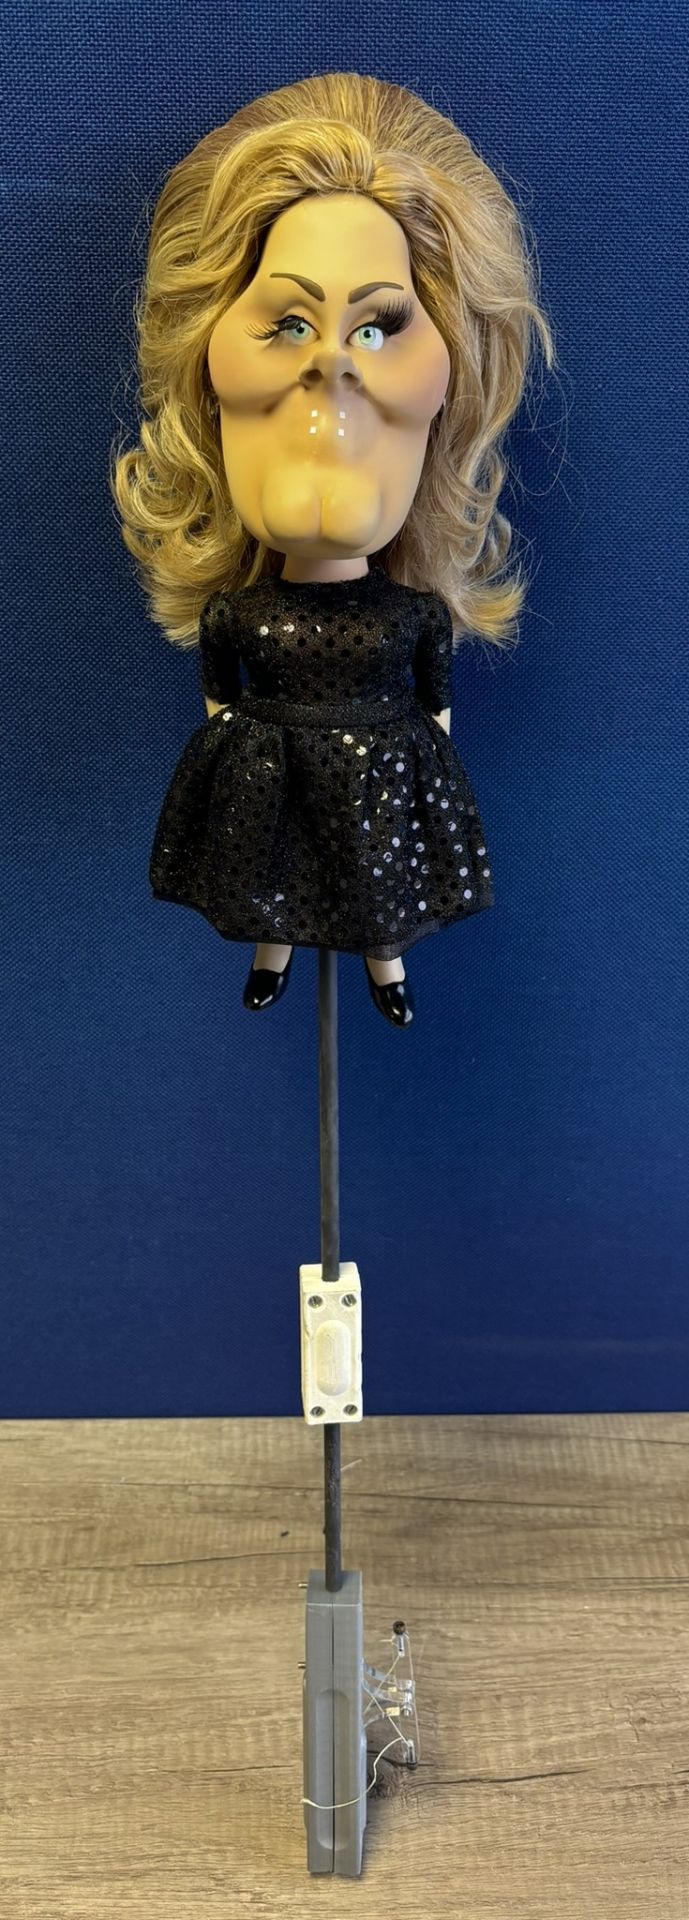 Newzoid puppet - Adele - Image 3 of 3